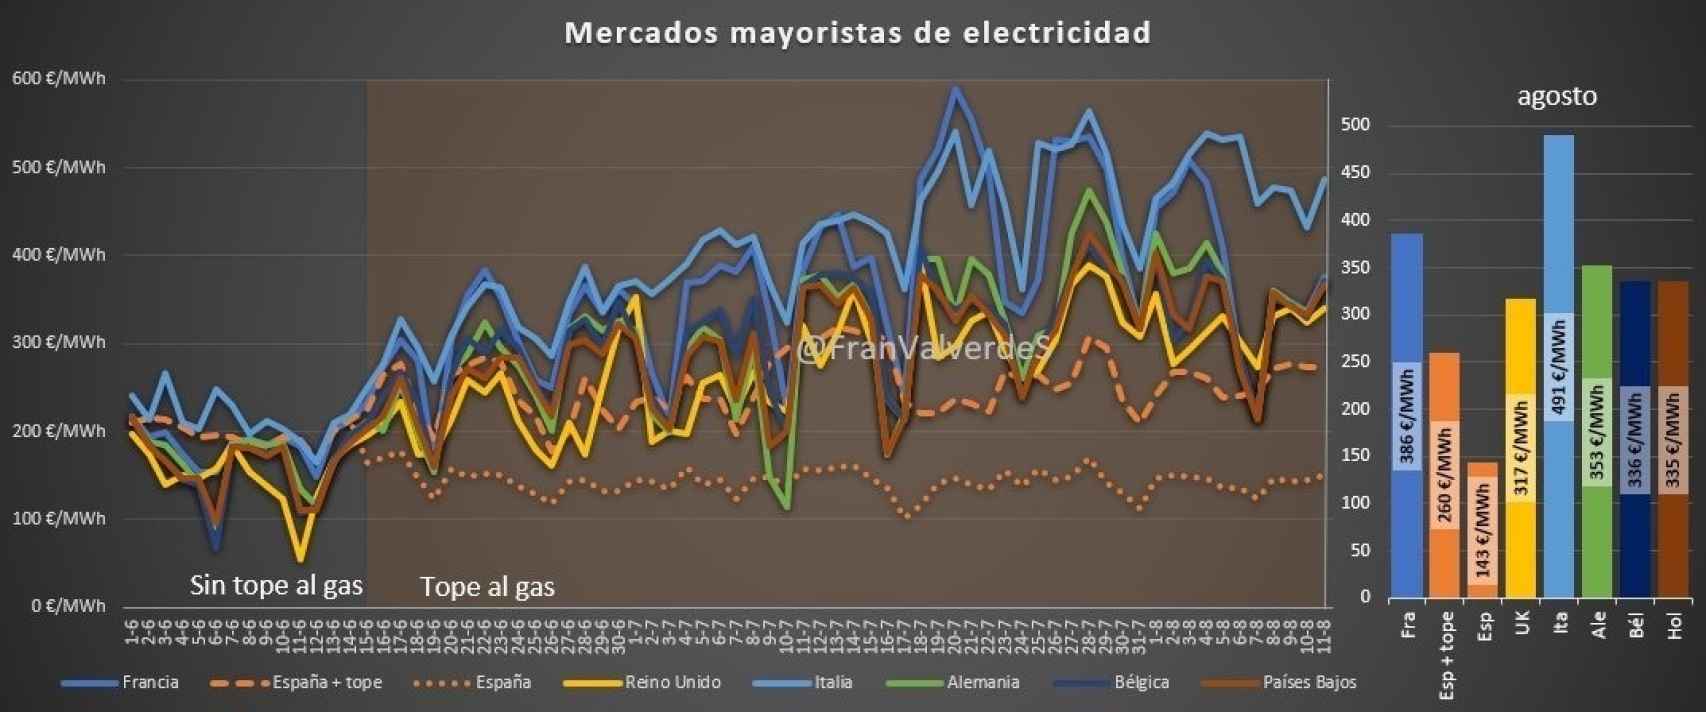 Evolución de los mercados mayoristas de electricidad